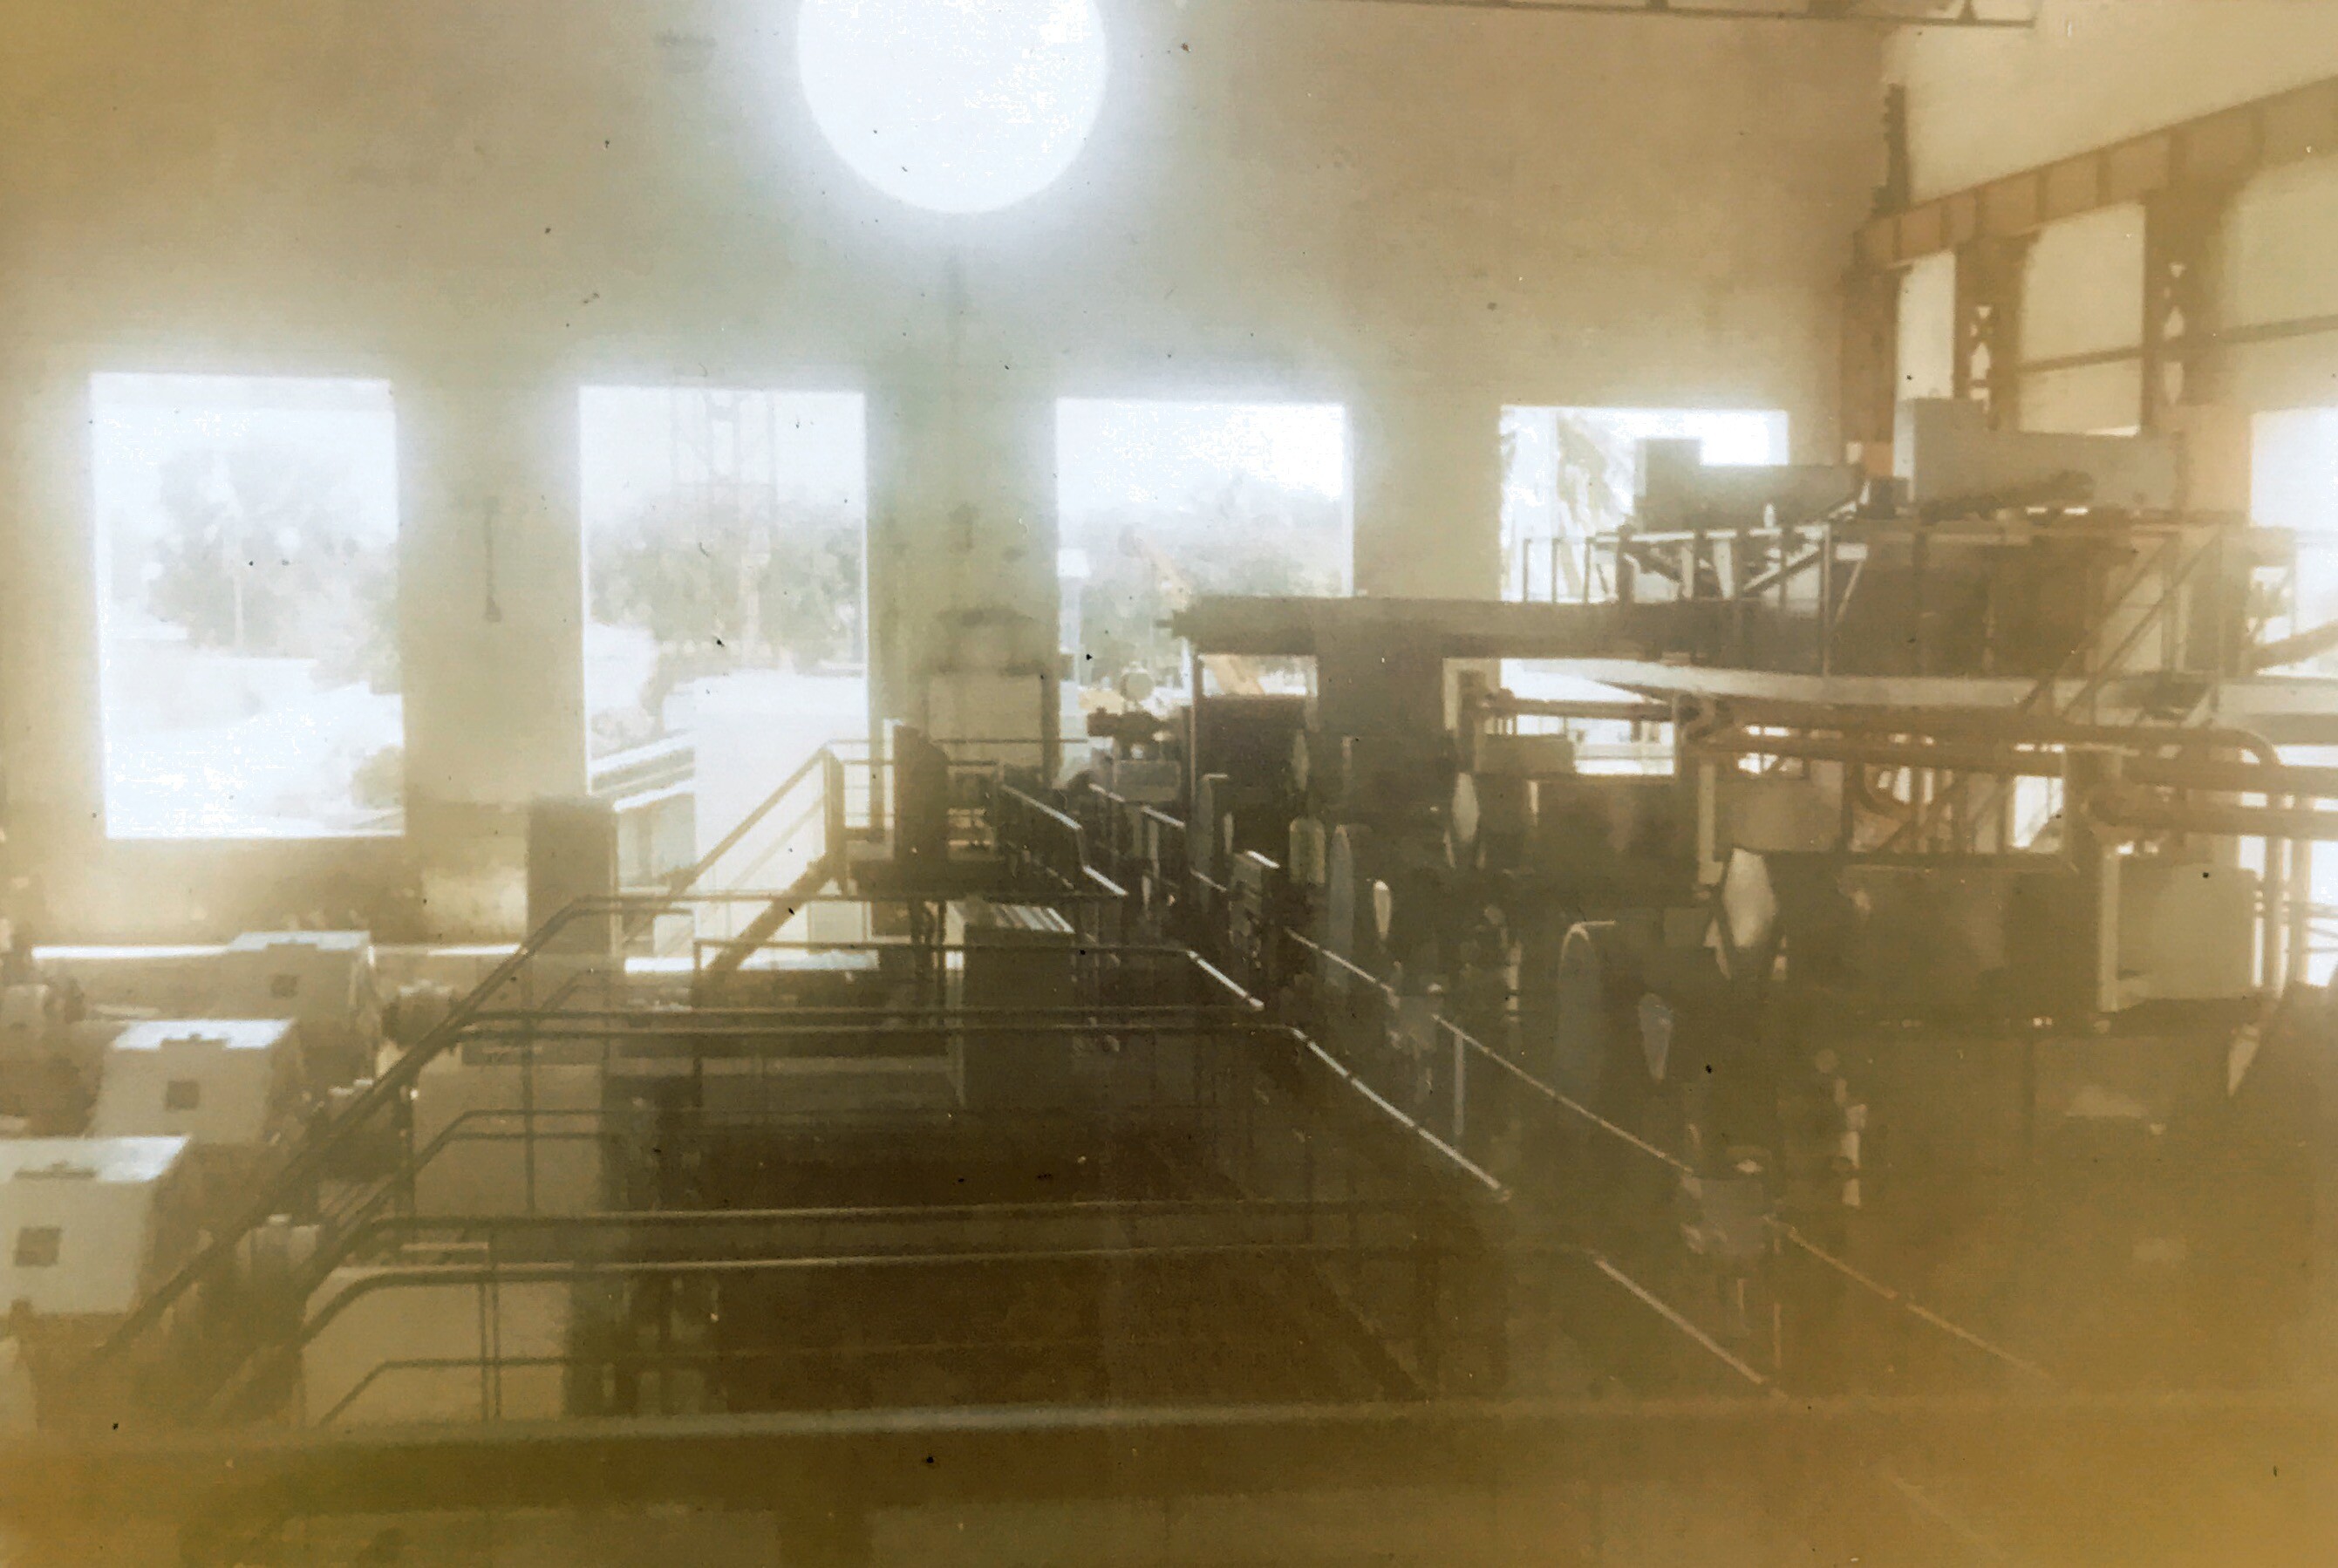 Archives de l'usine de Savanna, Réunion